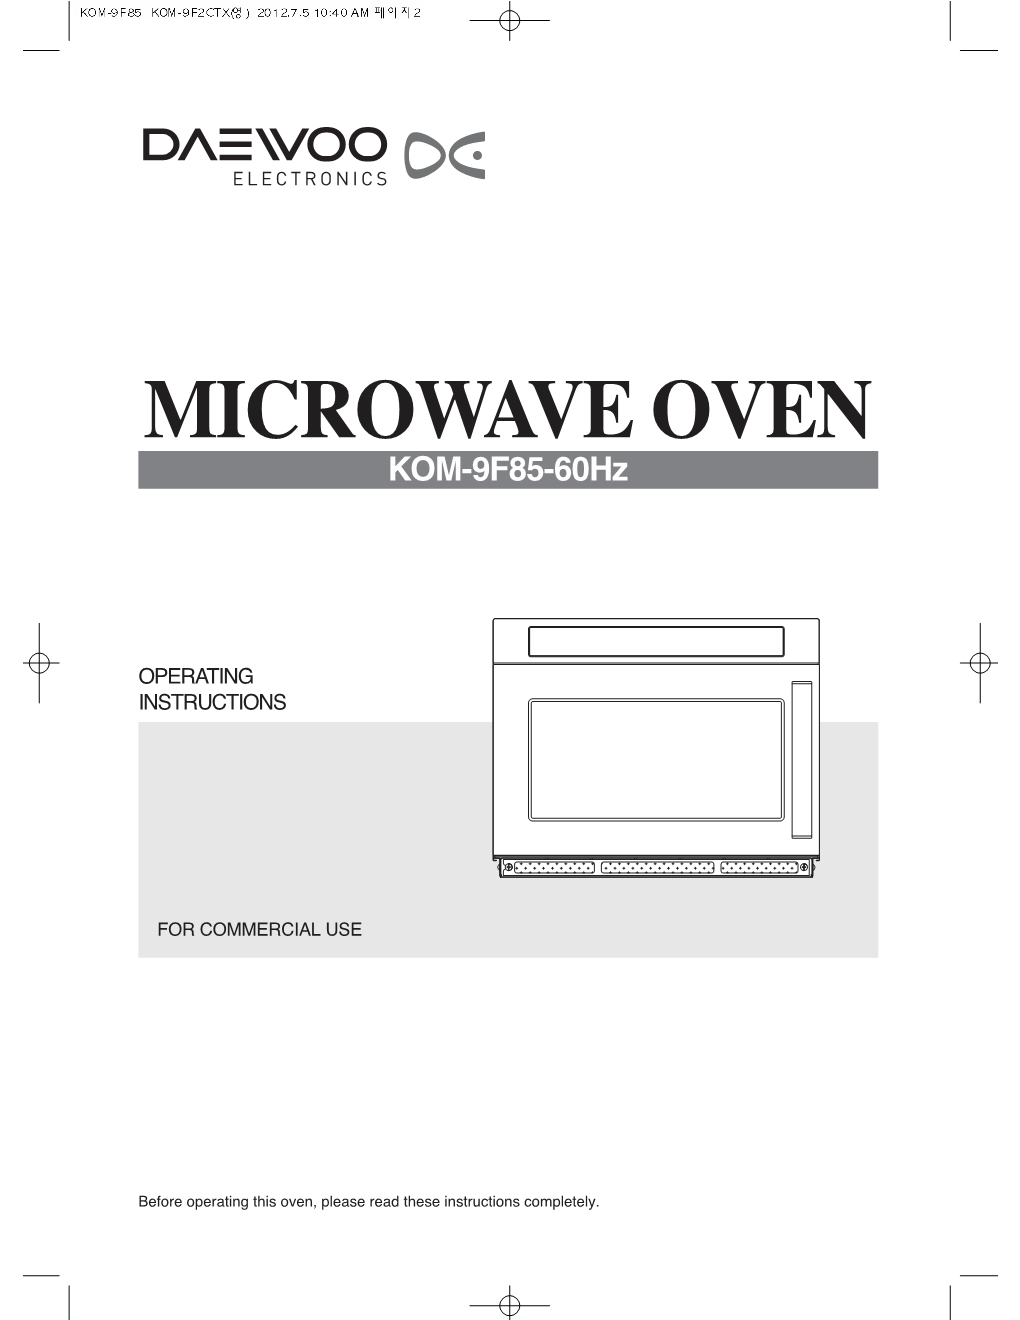 MICROWAVE OVEN KOM-9F85-60Hz